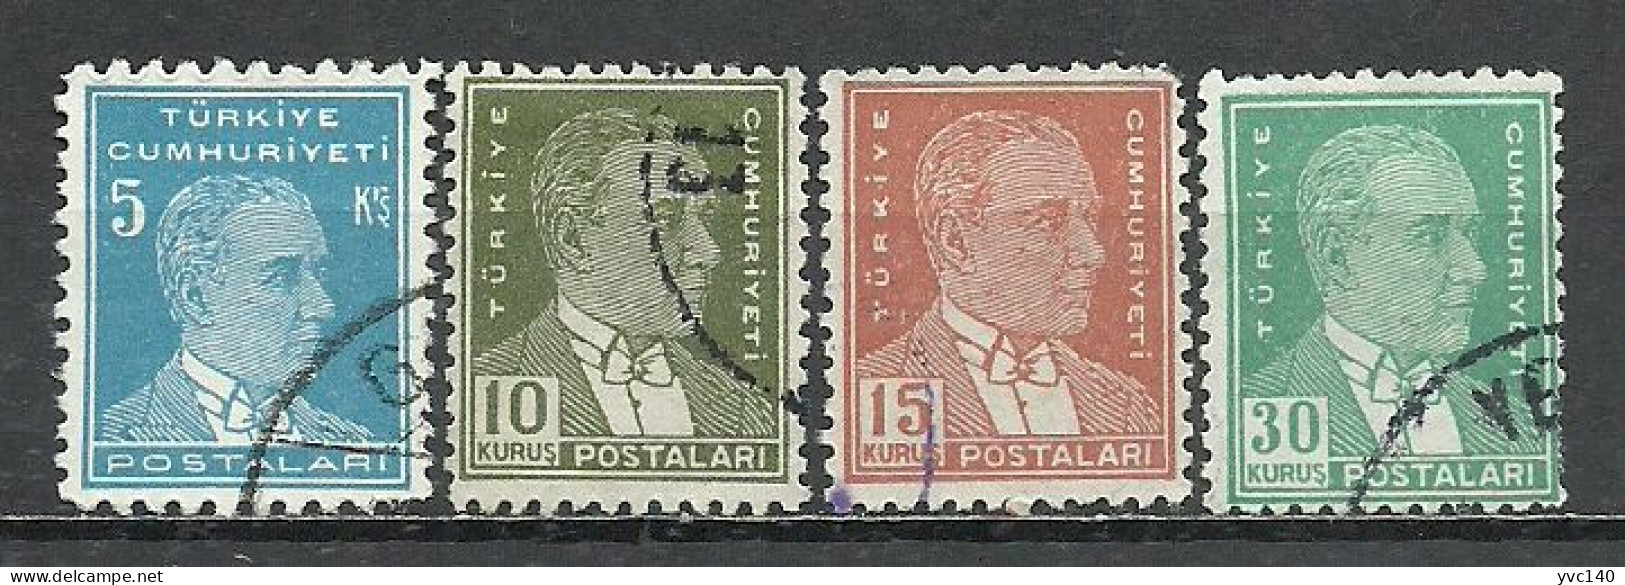 Turkey; 1955 9th Ataturk Issue Stamps - Gebruikt